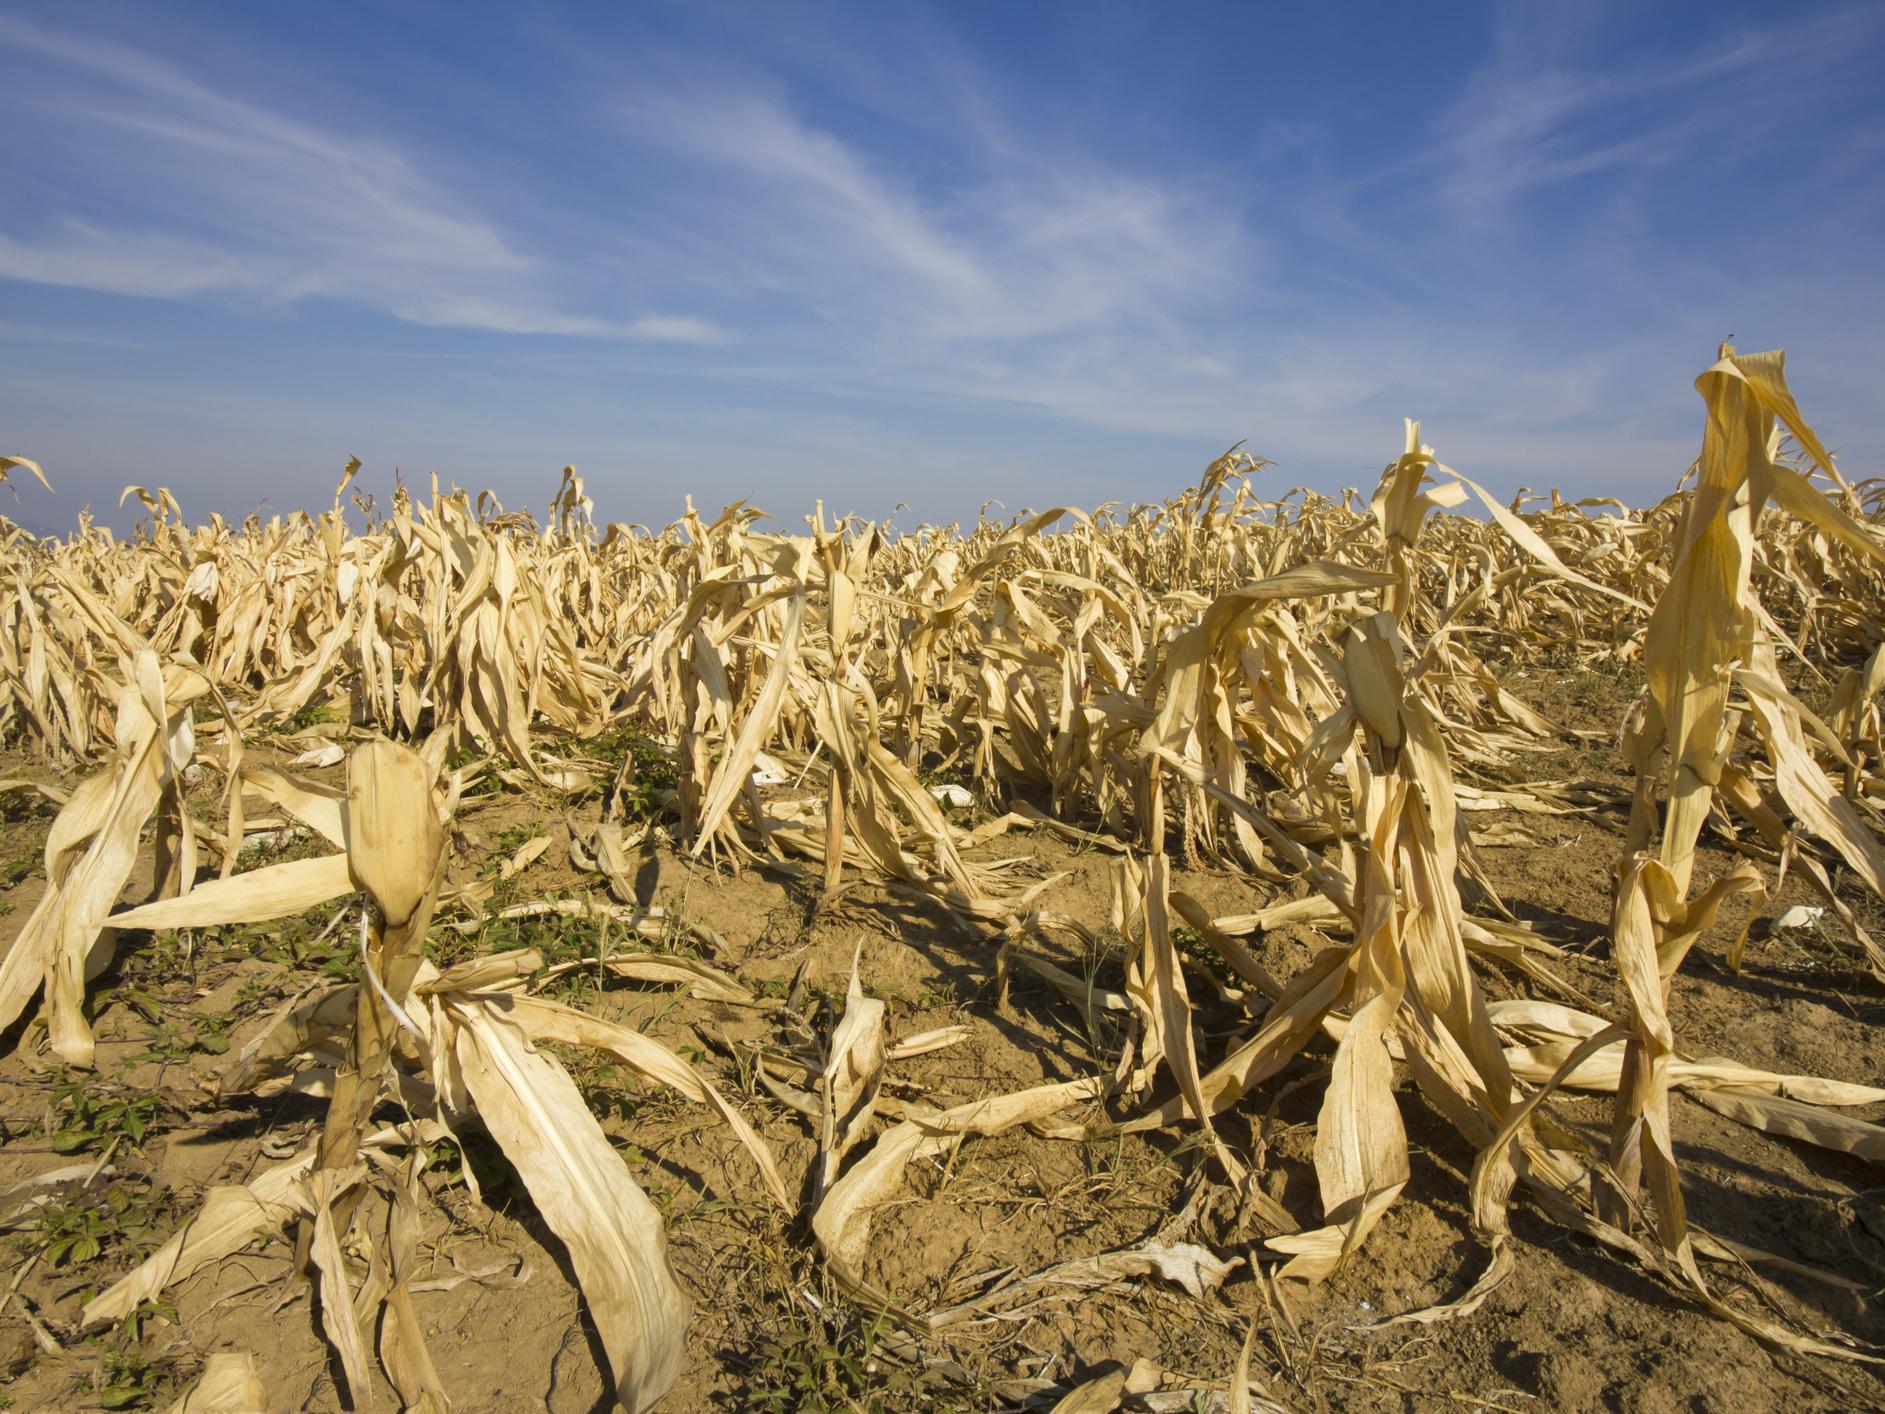 Crops fail during a drought